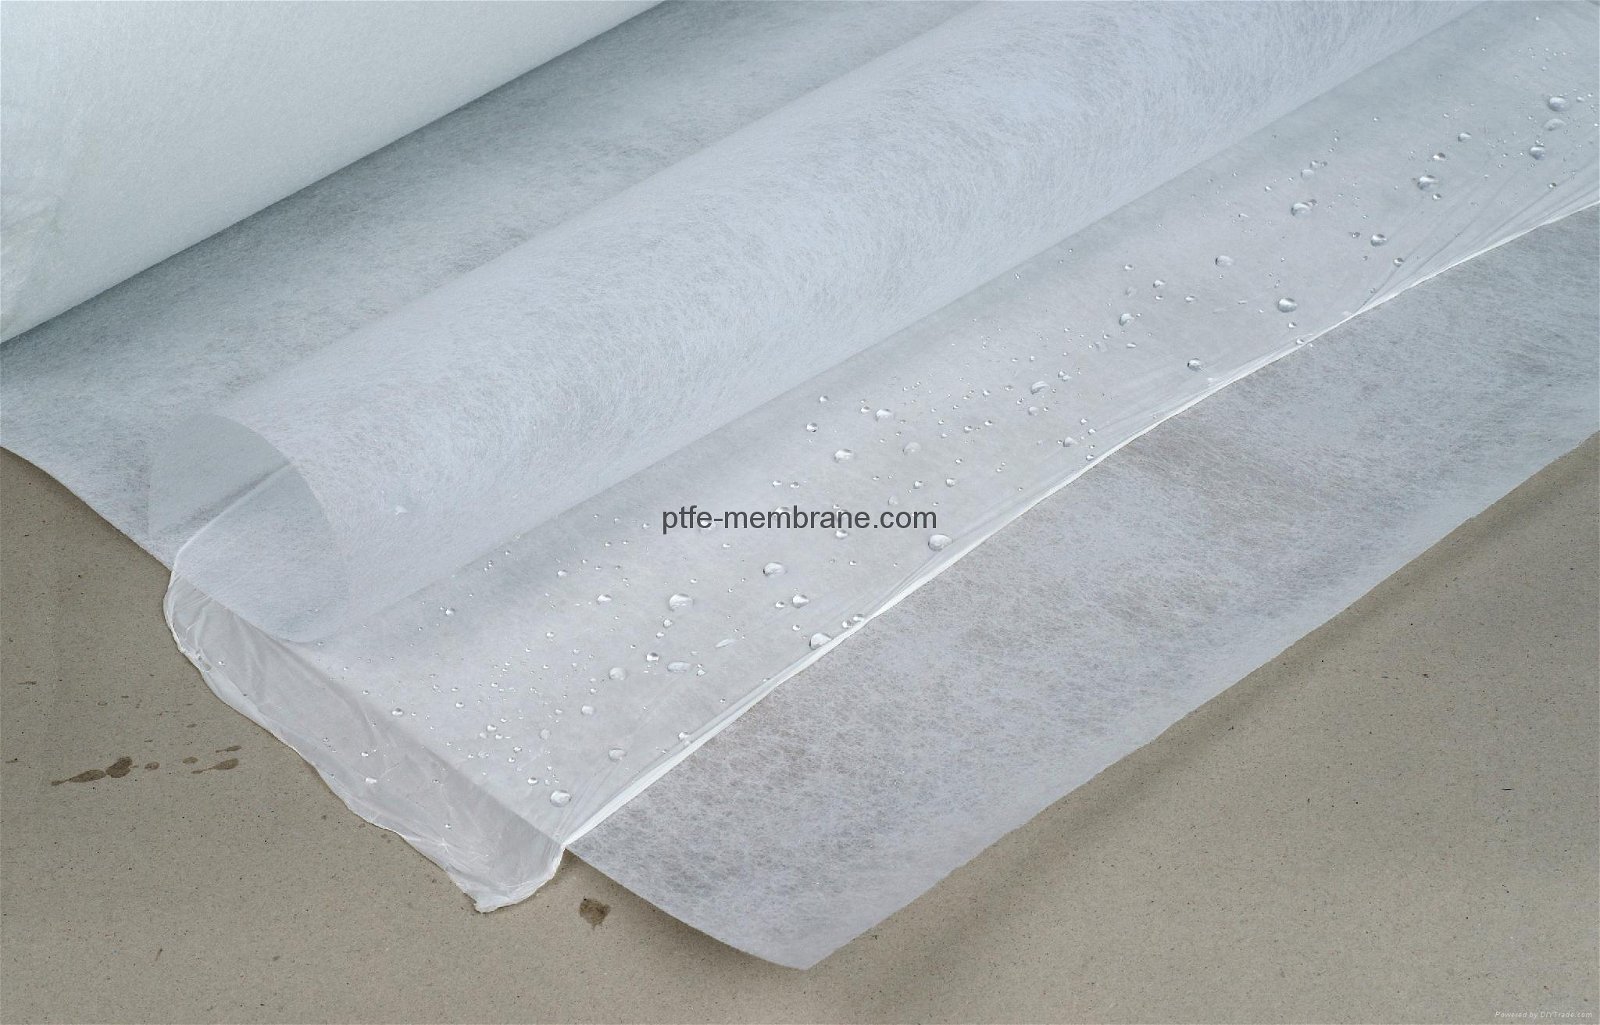 ePTFE Porous Membrane/Film - 0.22um Pore Size 4